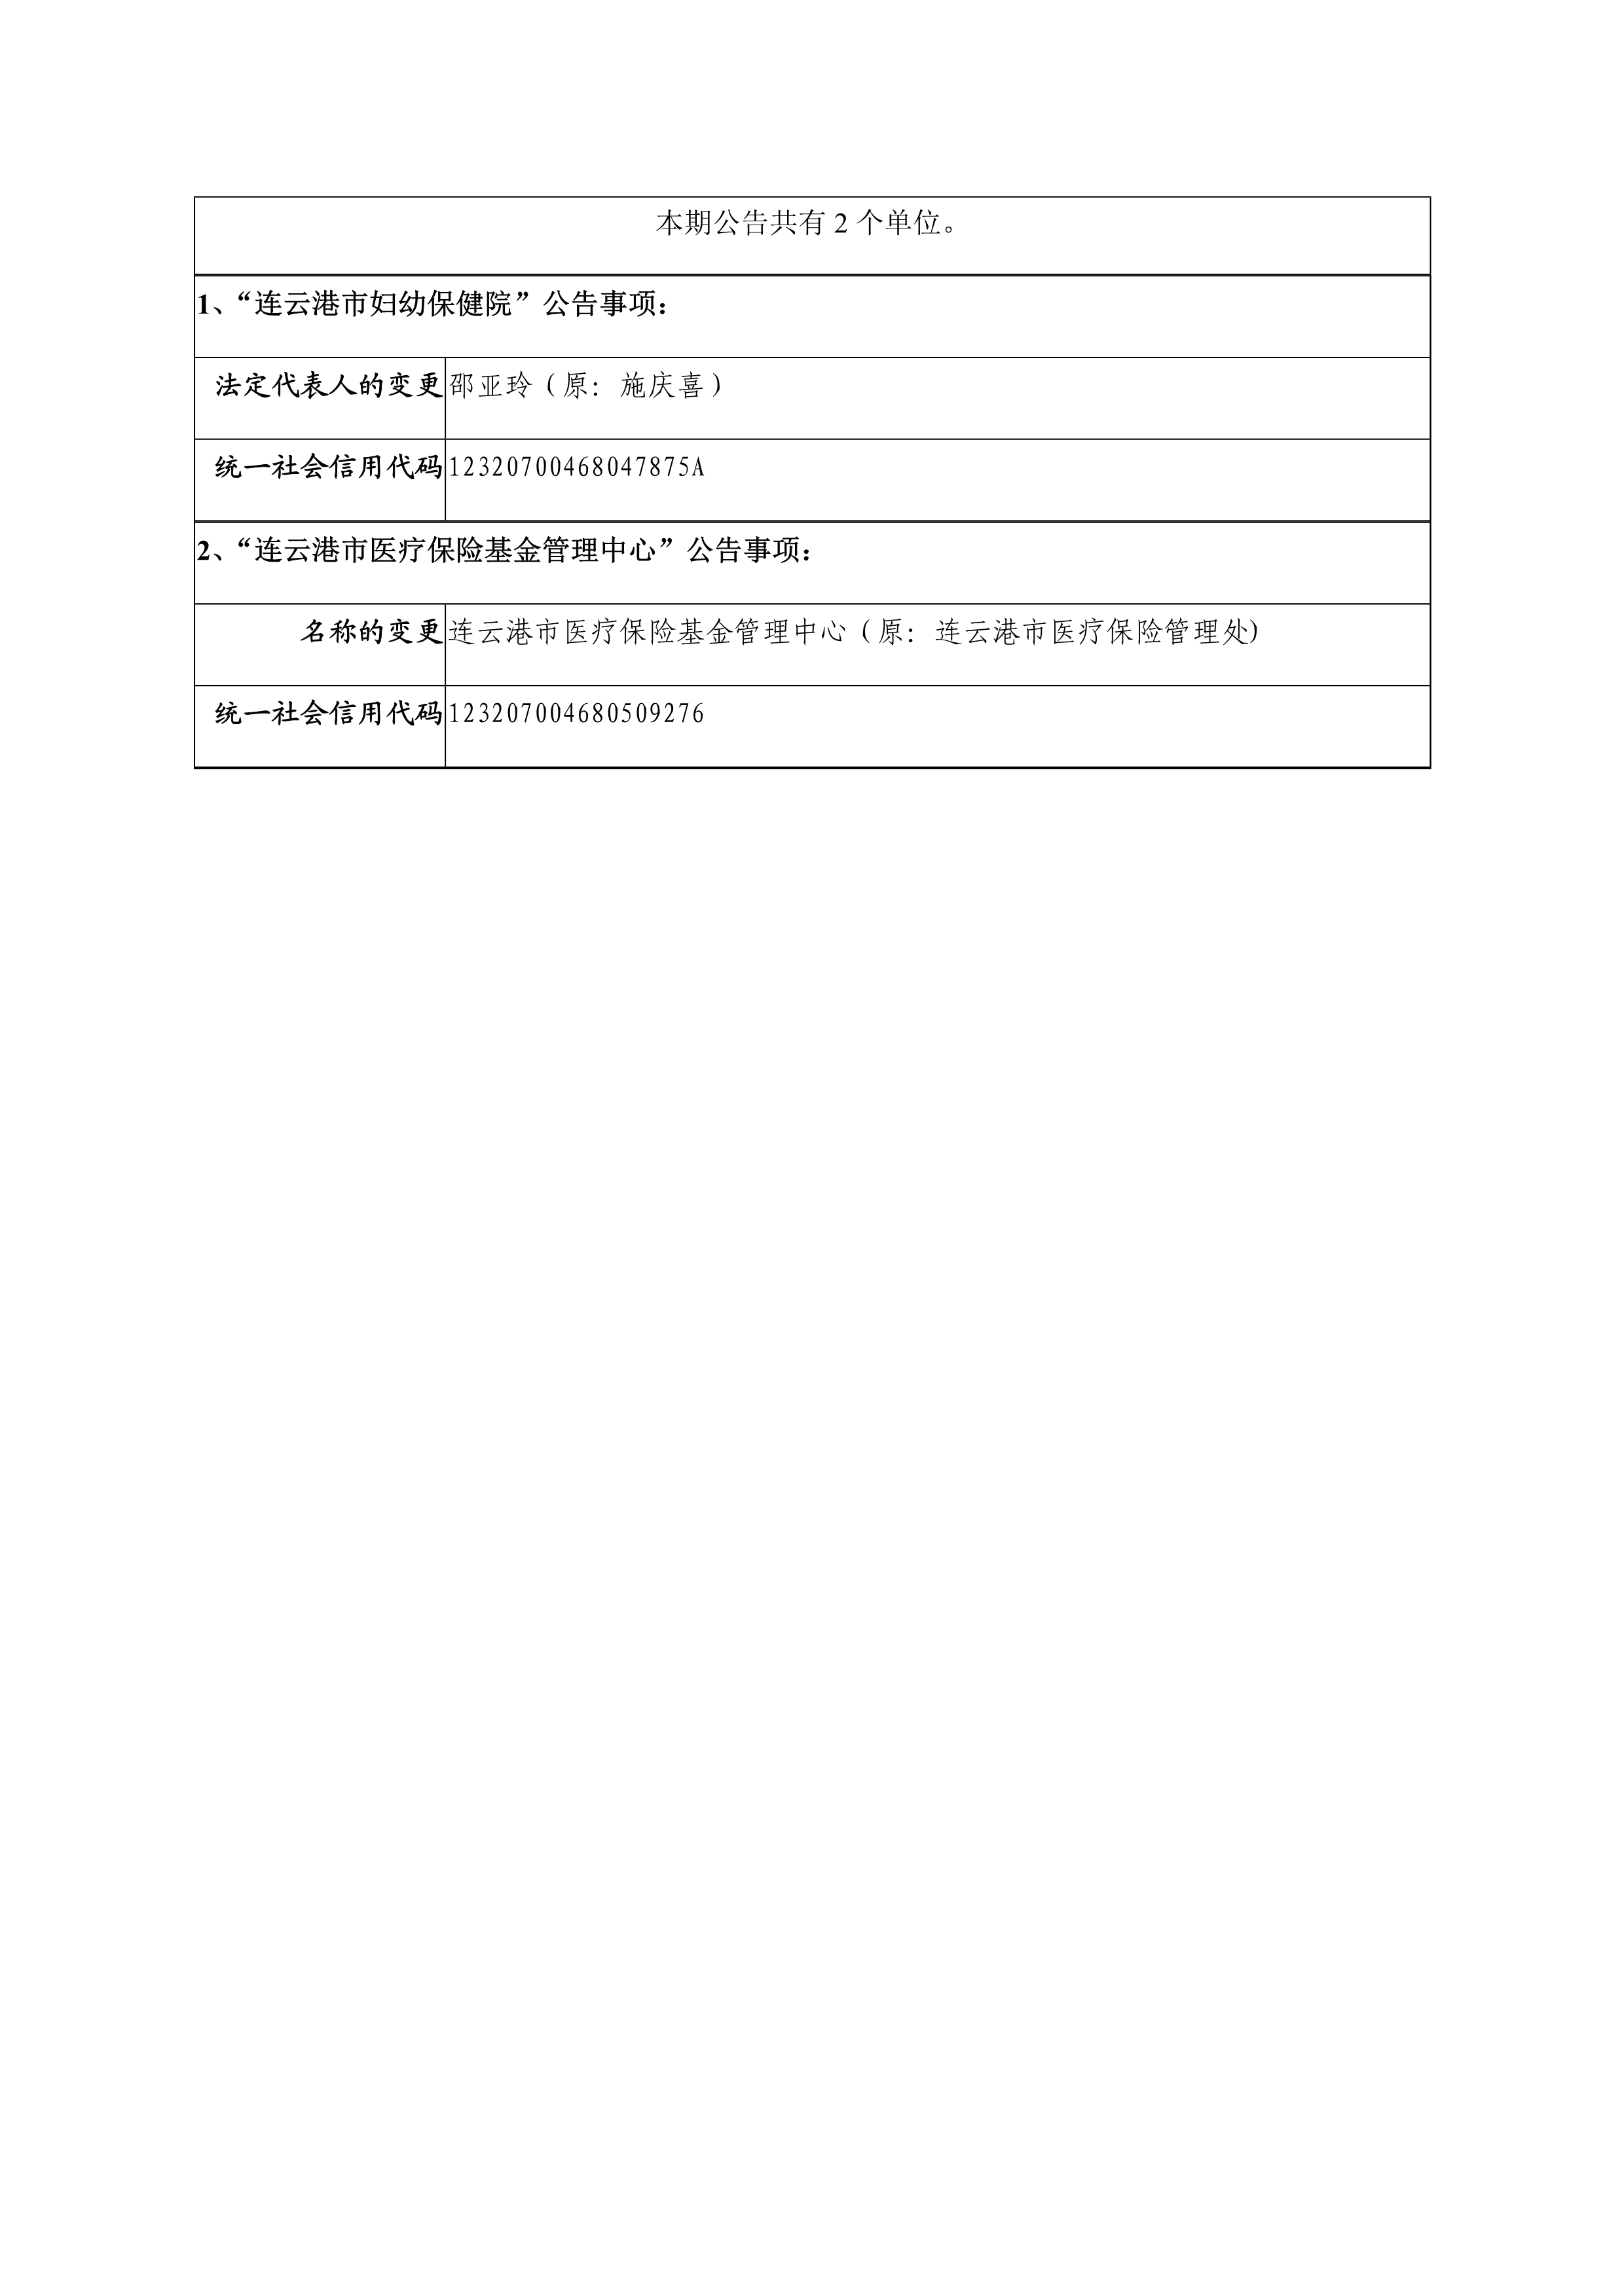 连云港市妇幼保健院、连云港市医疗保险基金管理中心变更登记的公告_1.png